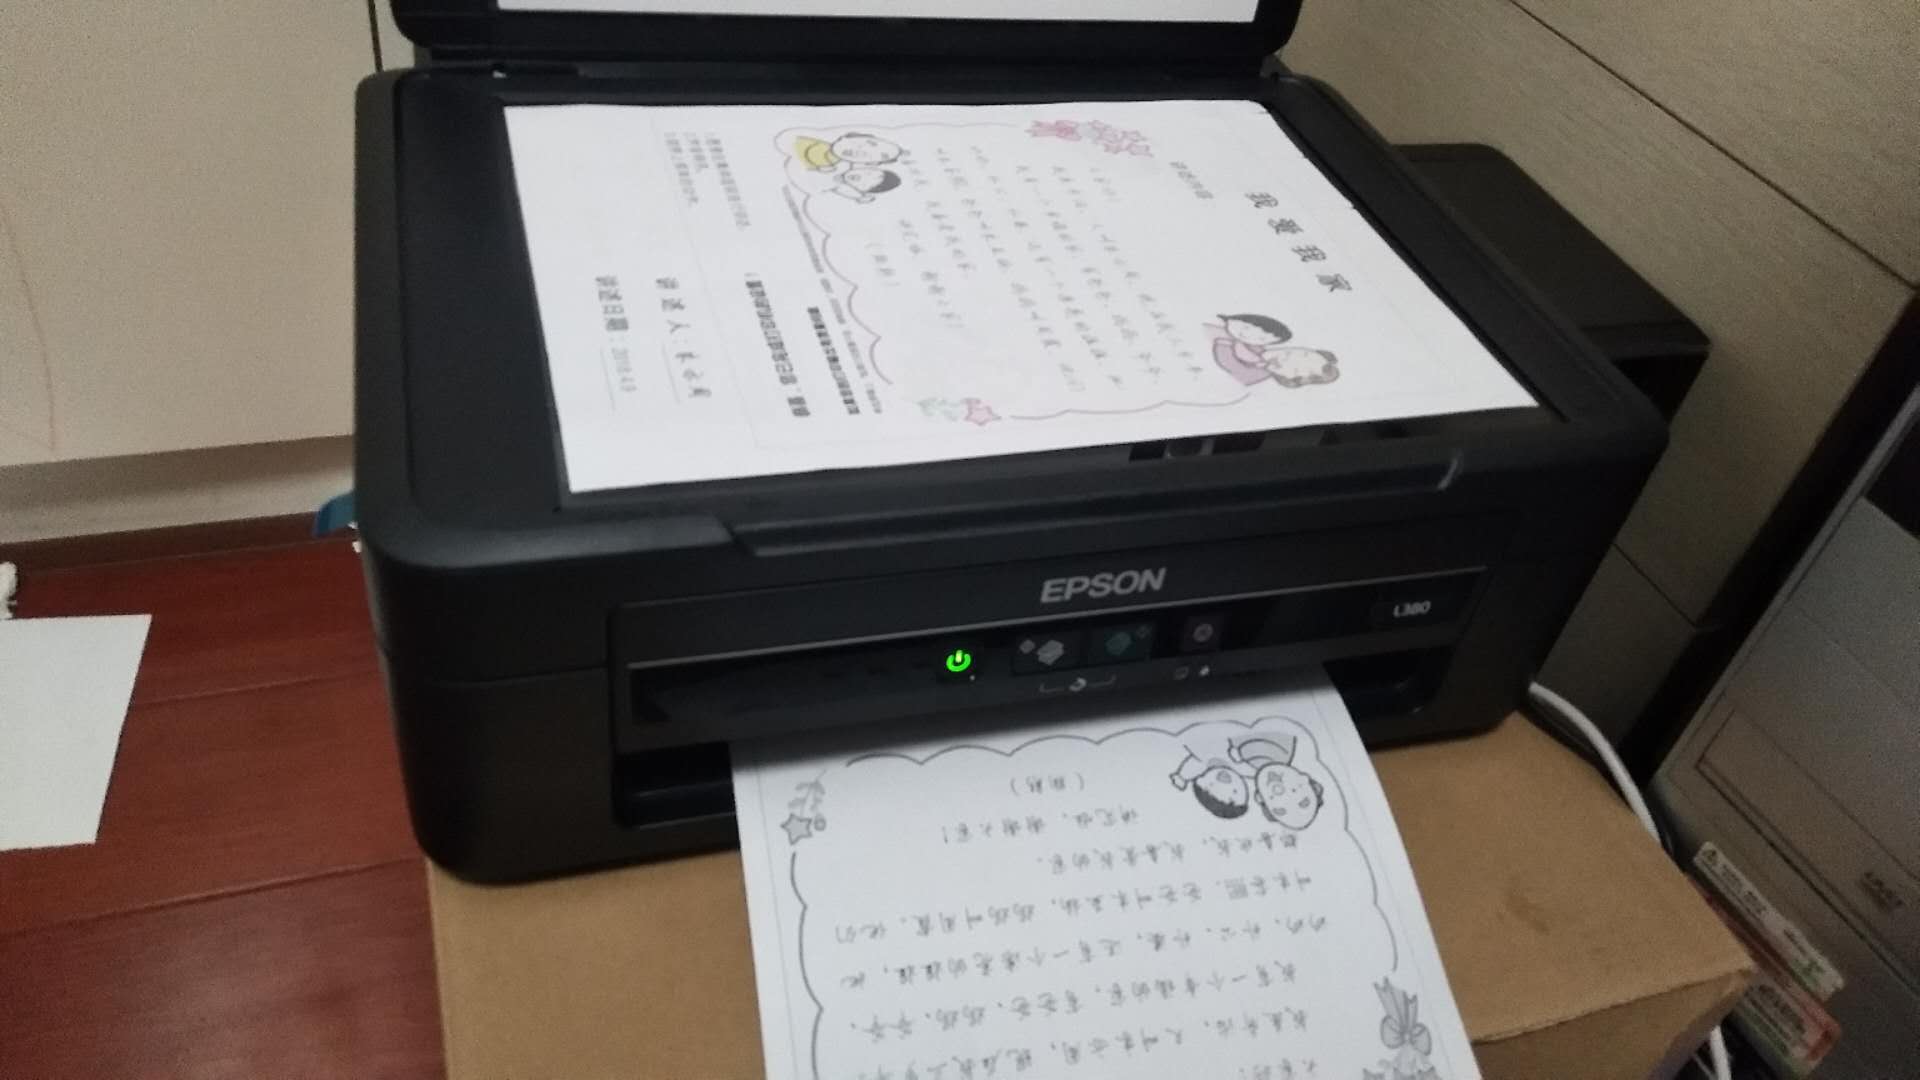 06-24 爱普生(epson)l380墨仓式打印机一体机(打印复印扫描)大品